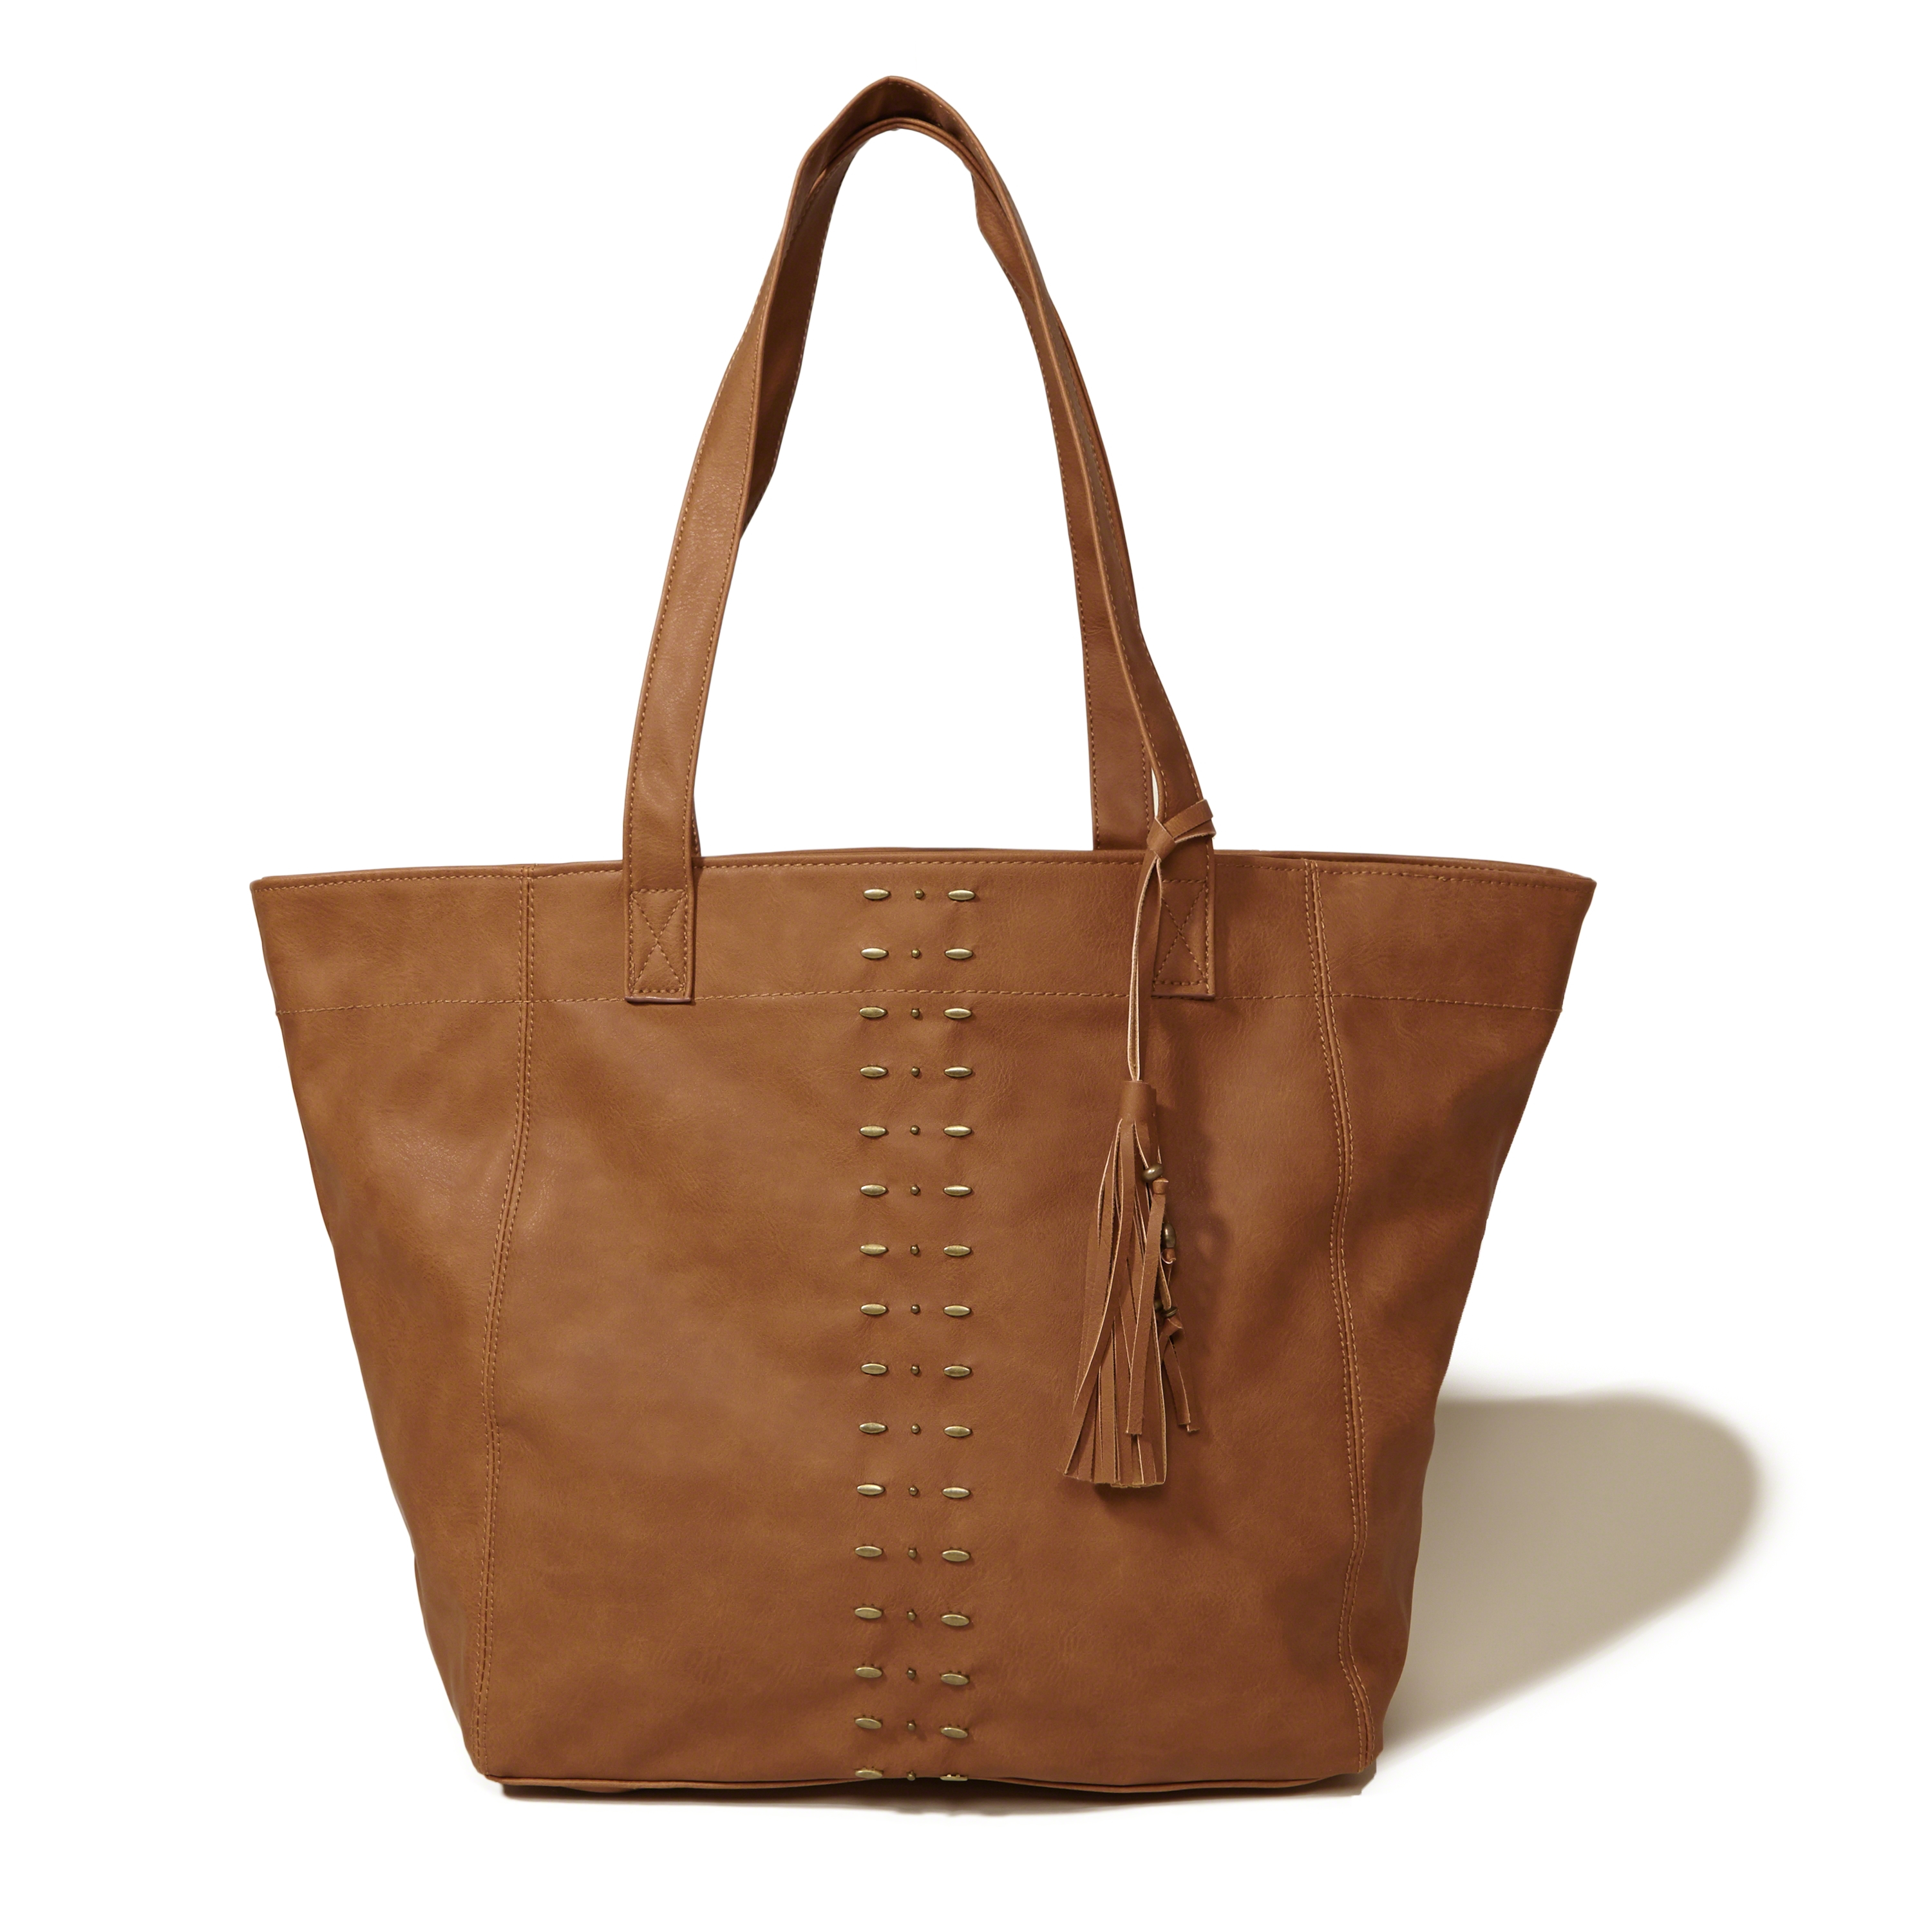 Hollister Vegan Leather Tassel Tote Bag in Brown - Lyst